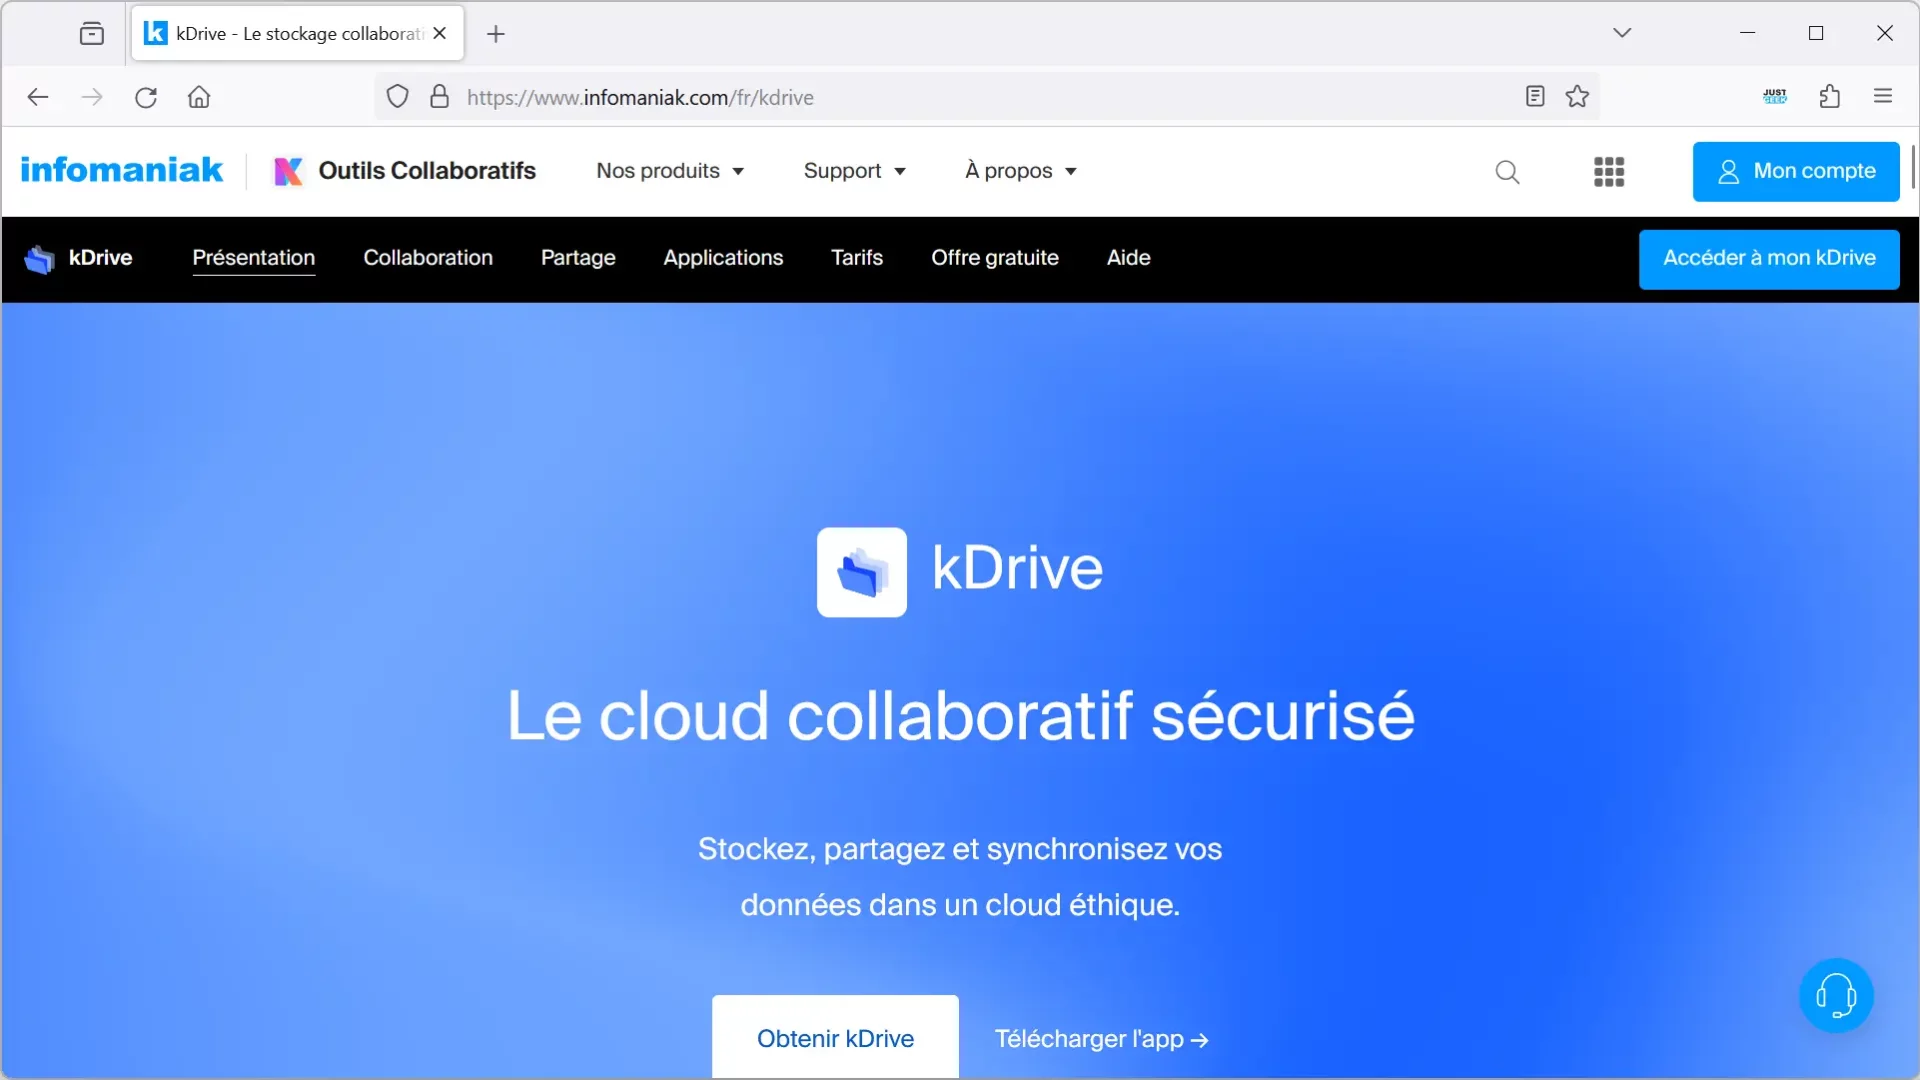 kDrive, le cloud collaboratif sécurisé